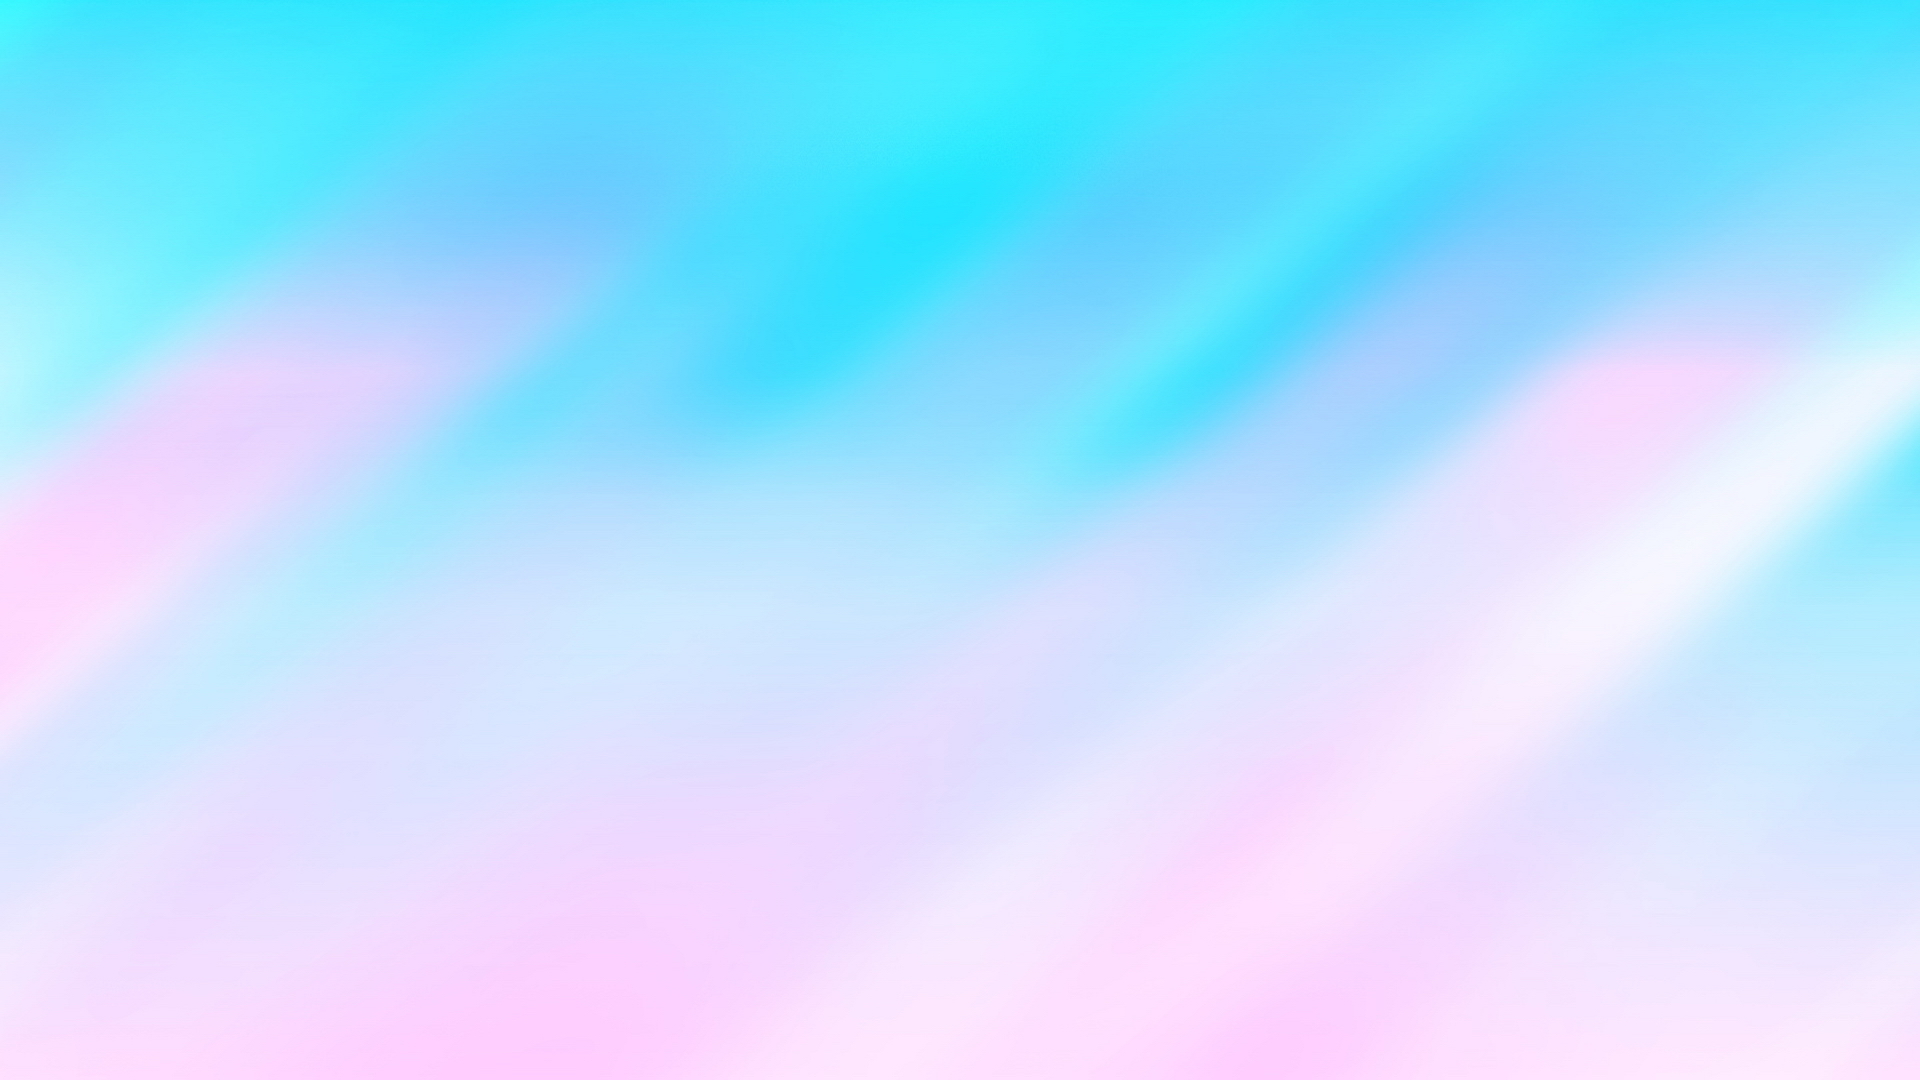 papier peint pastel,bleu,aqua,ciel,rose,turquoise